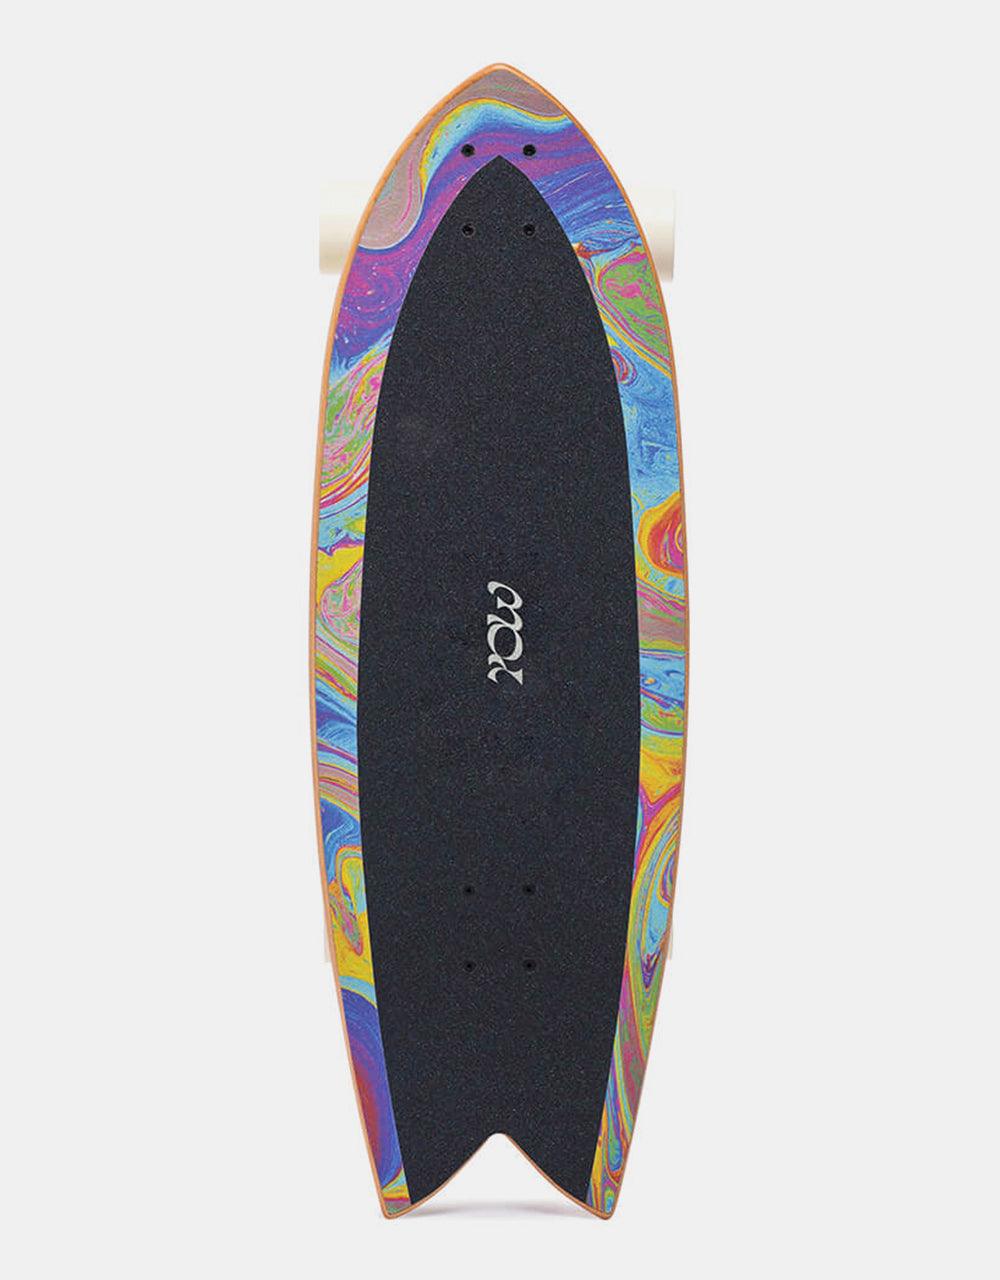 YOW Coxos SurfSkate Cruiser Skateboard - 10.25" x 31"